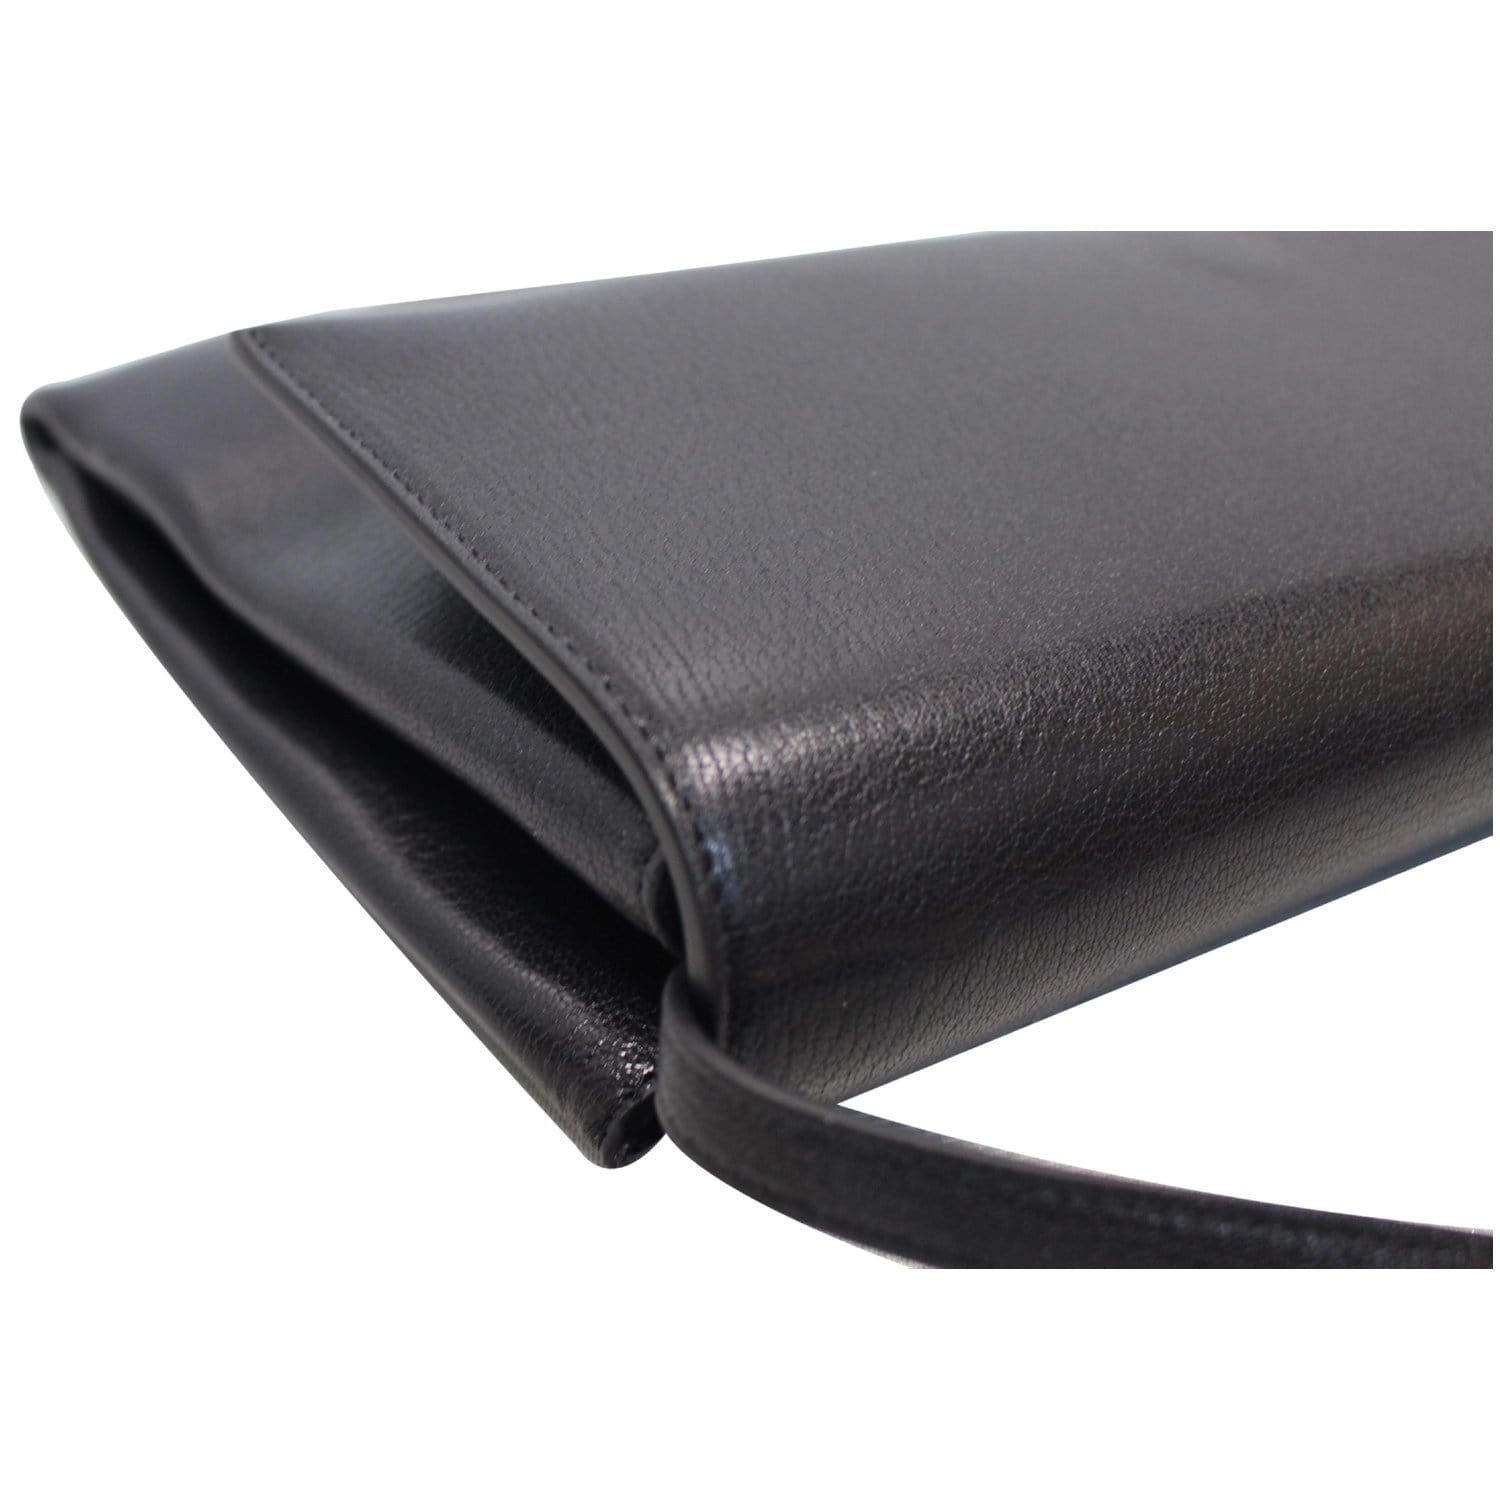 CELINE Folded Clutch Strap Leather Shoulder Bag Black - 15% OFF